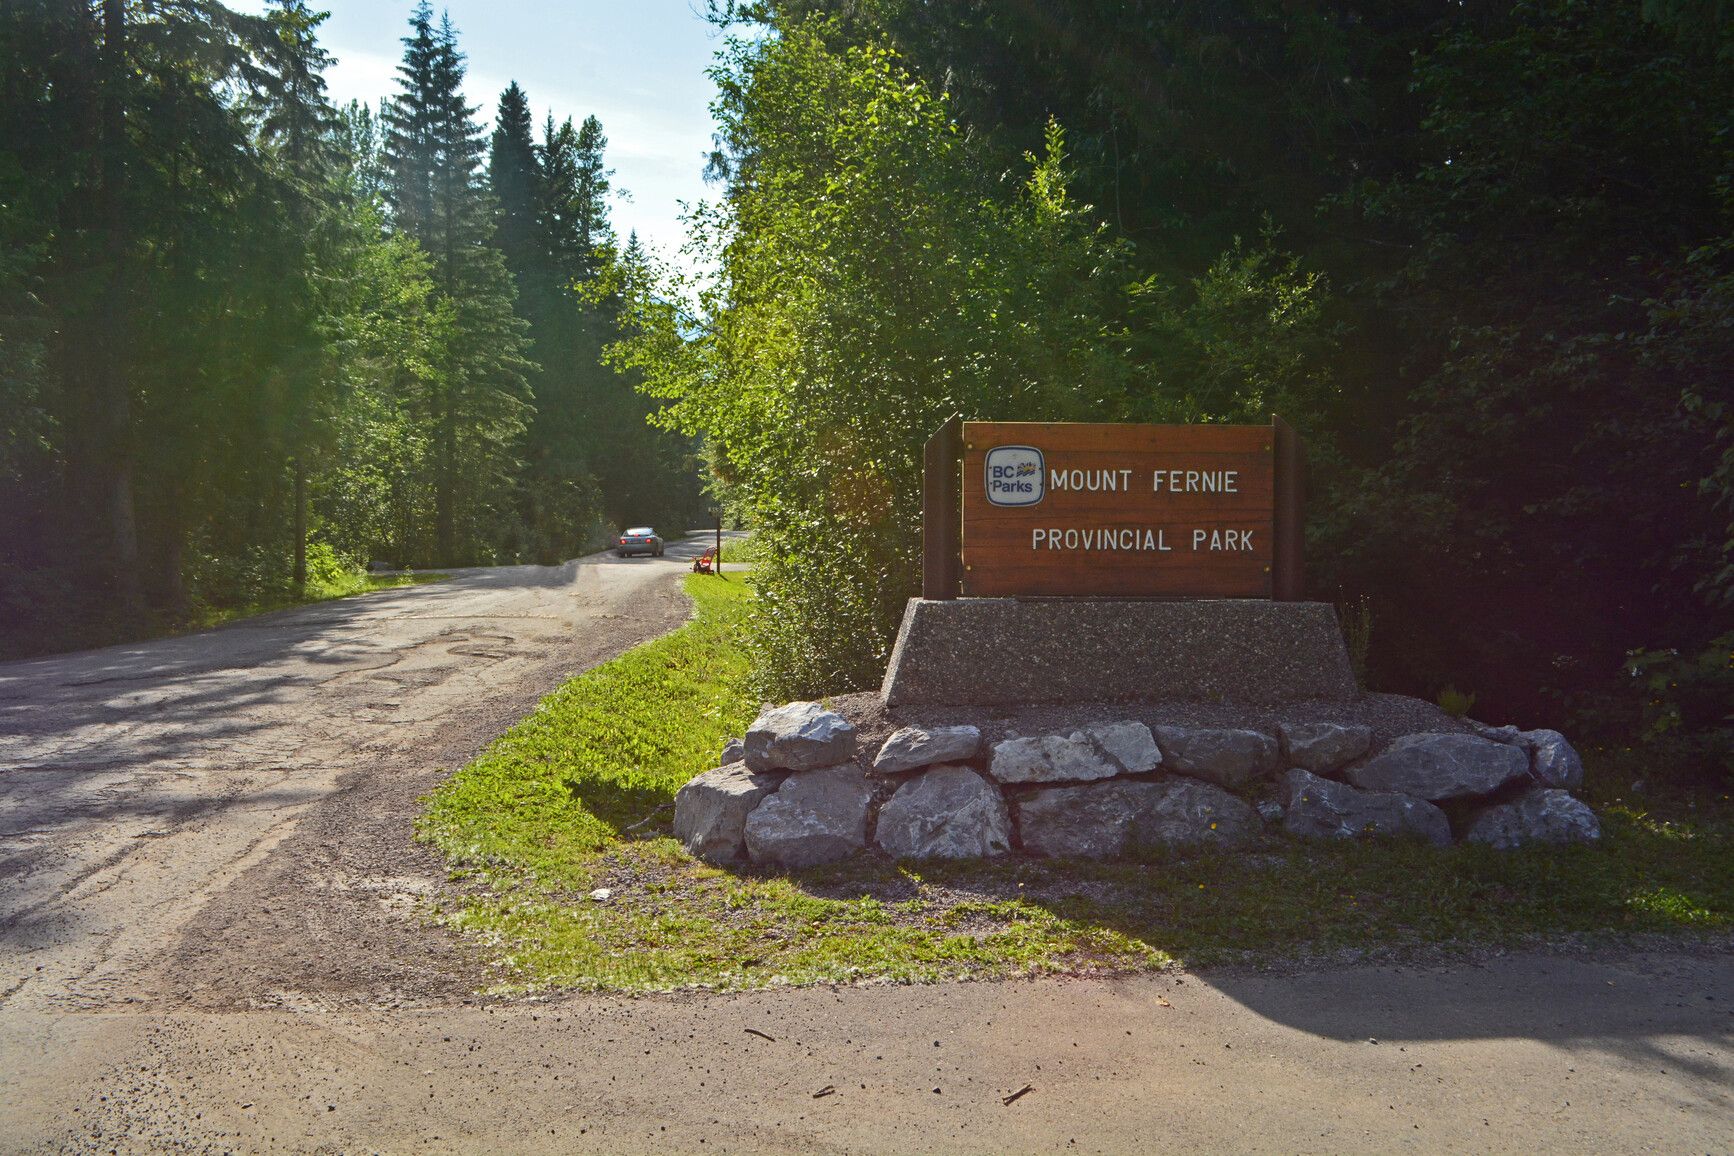 Mount Fernie Park entrance sign.